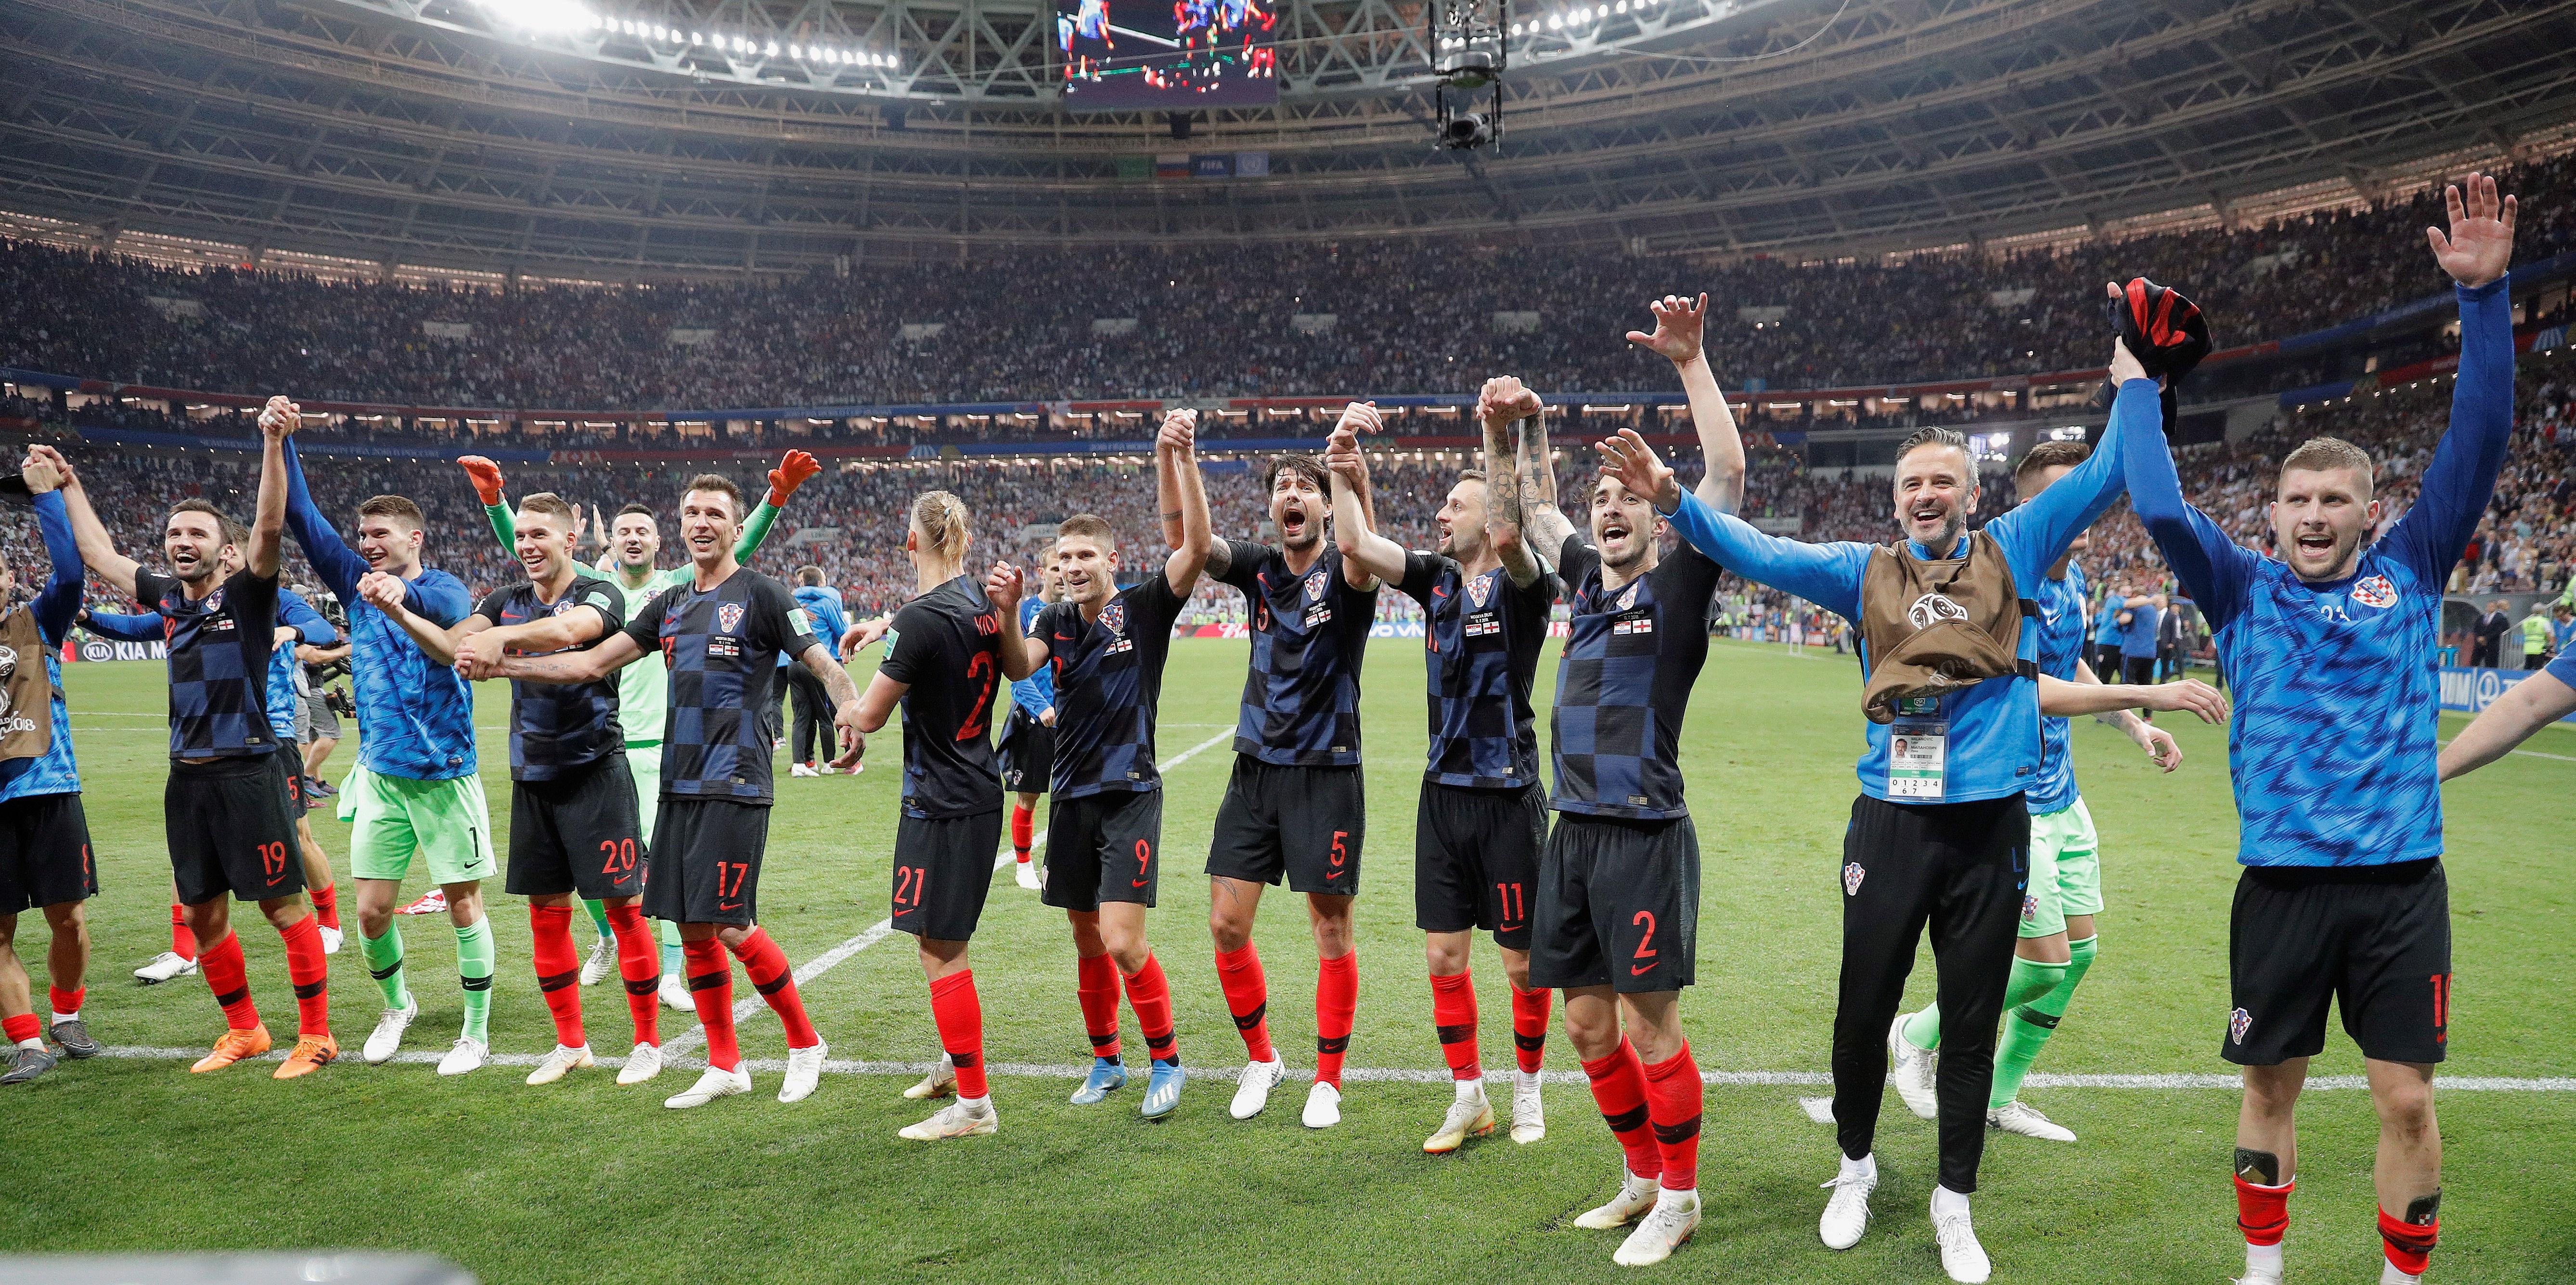 L'original homenatge del govern de Croàcia a la selecció de futbol